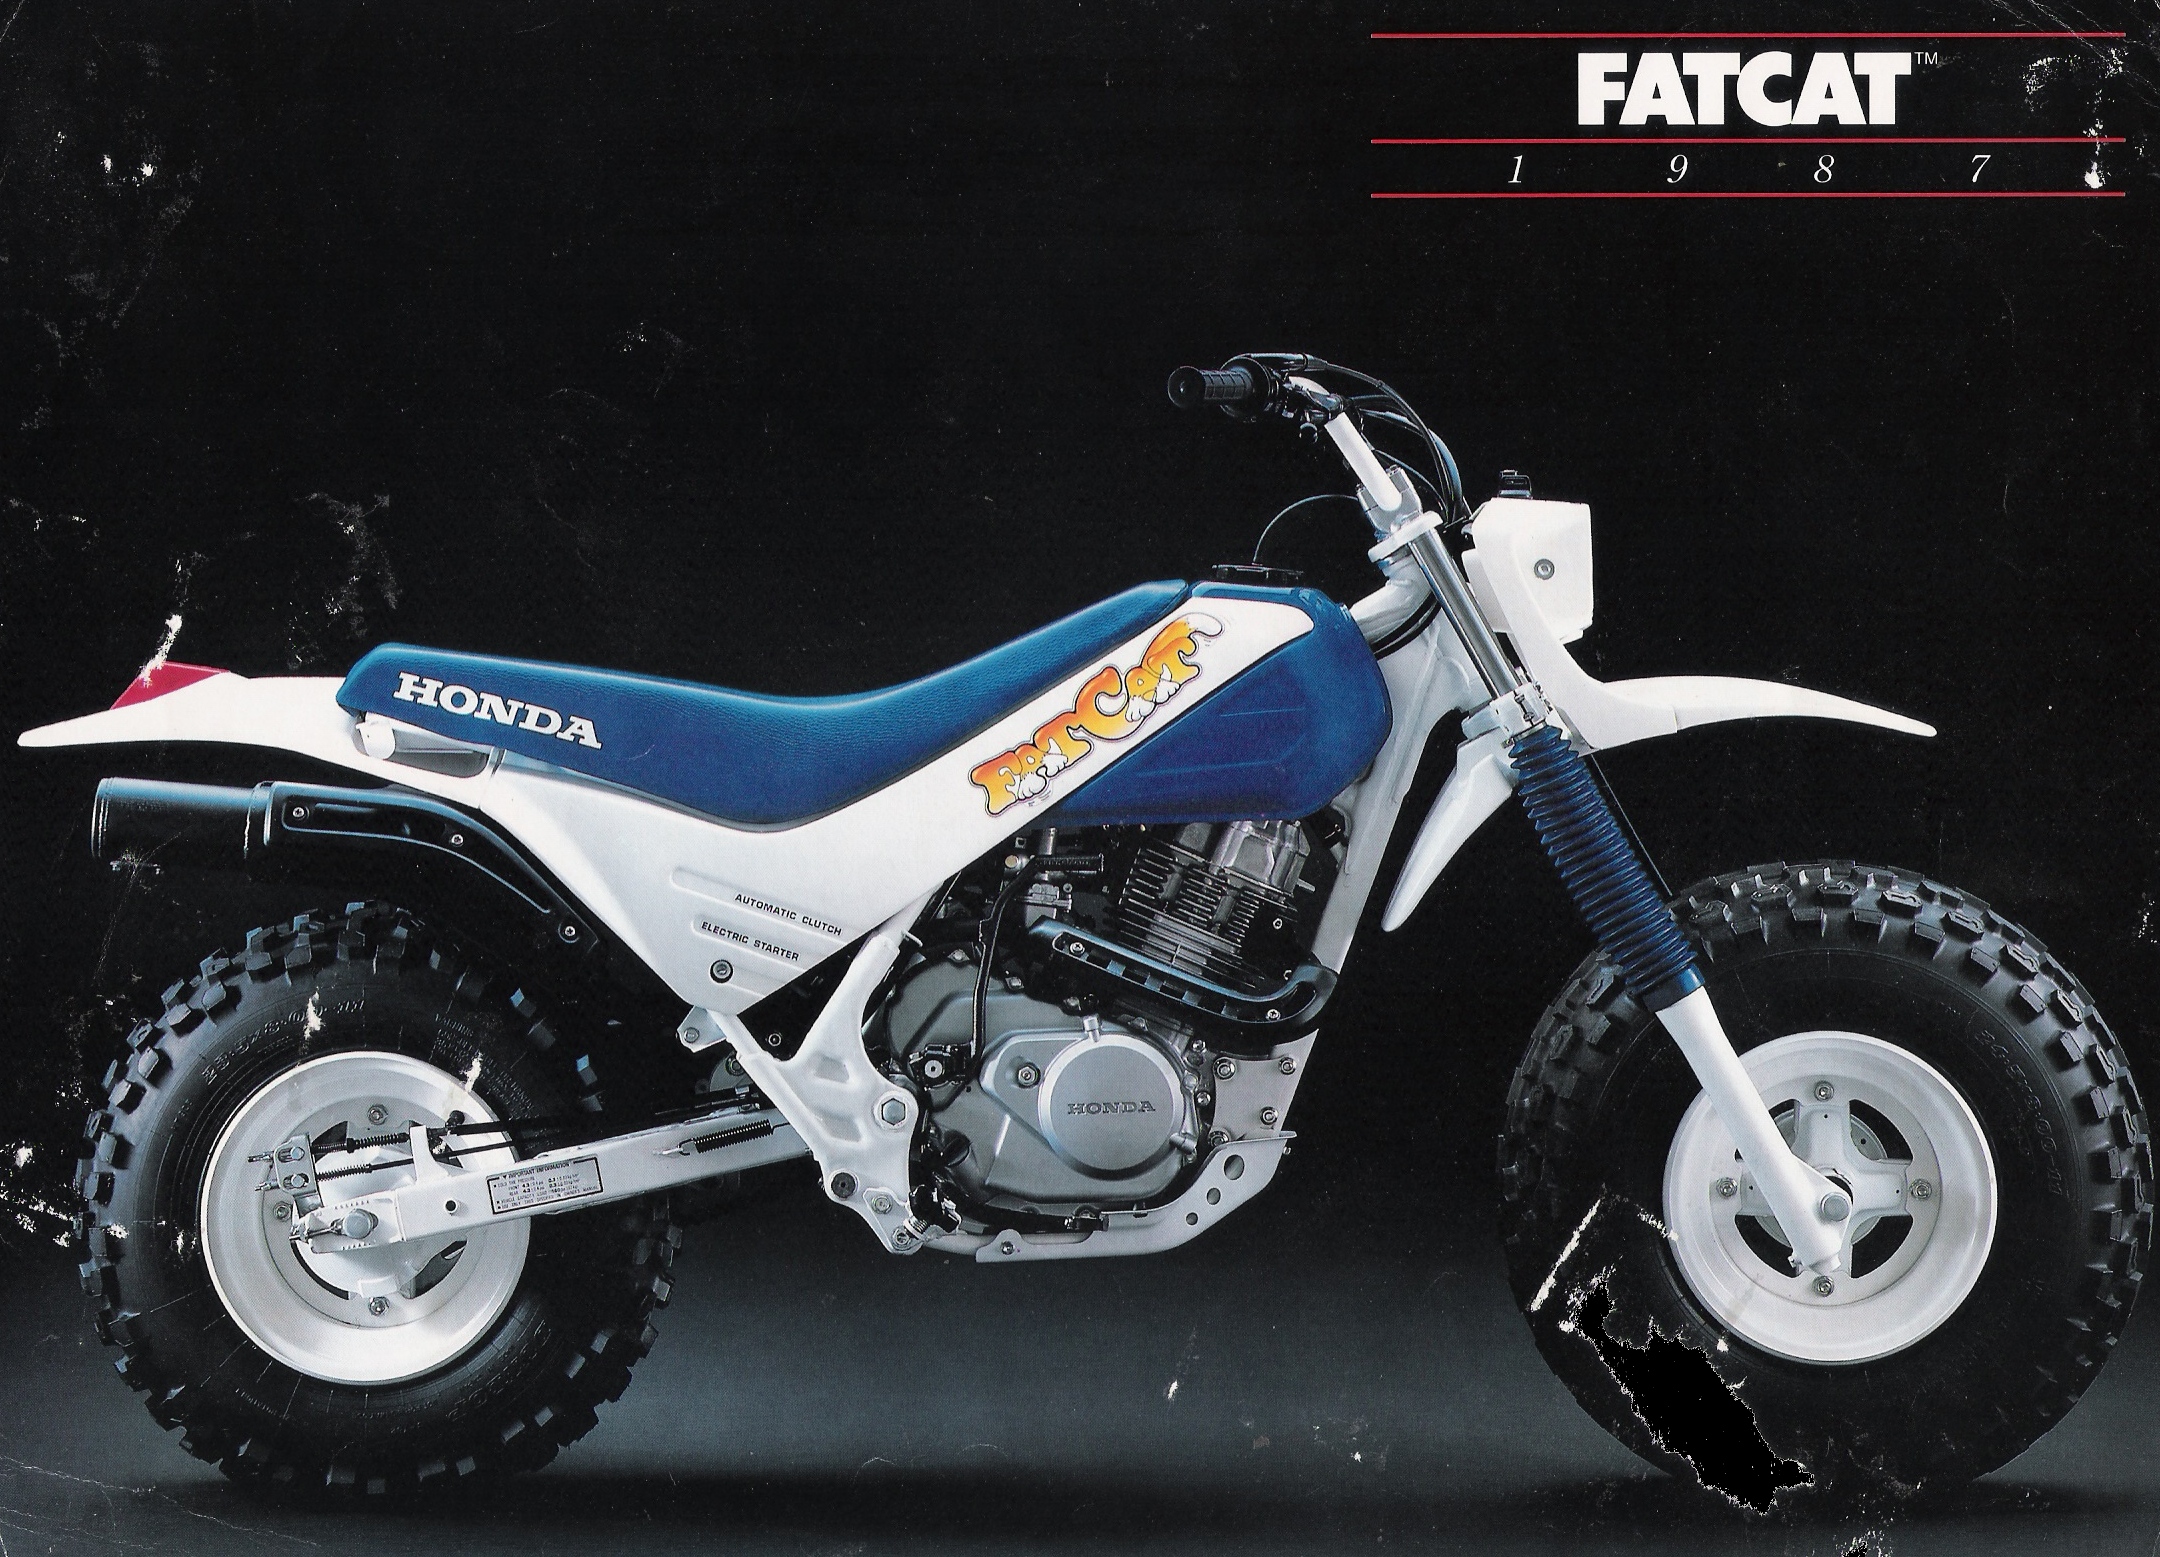 Мотоцикл Honda FATCAT 200 1987